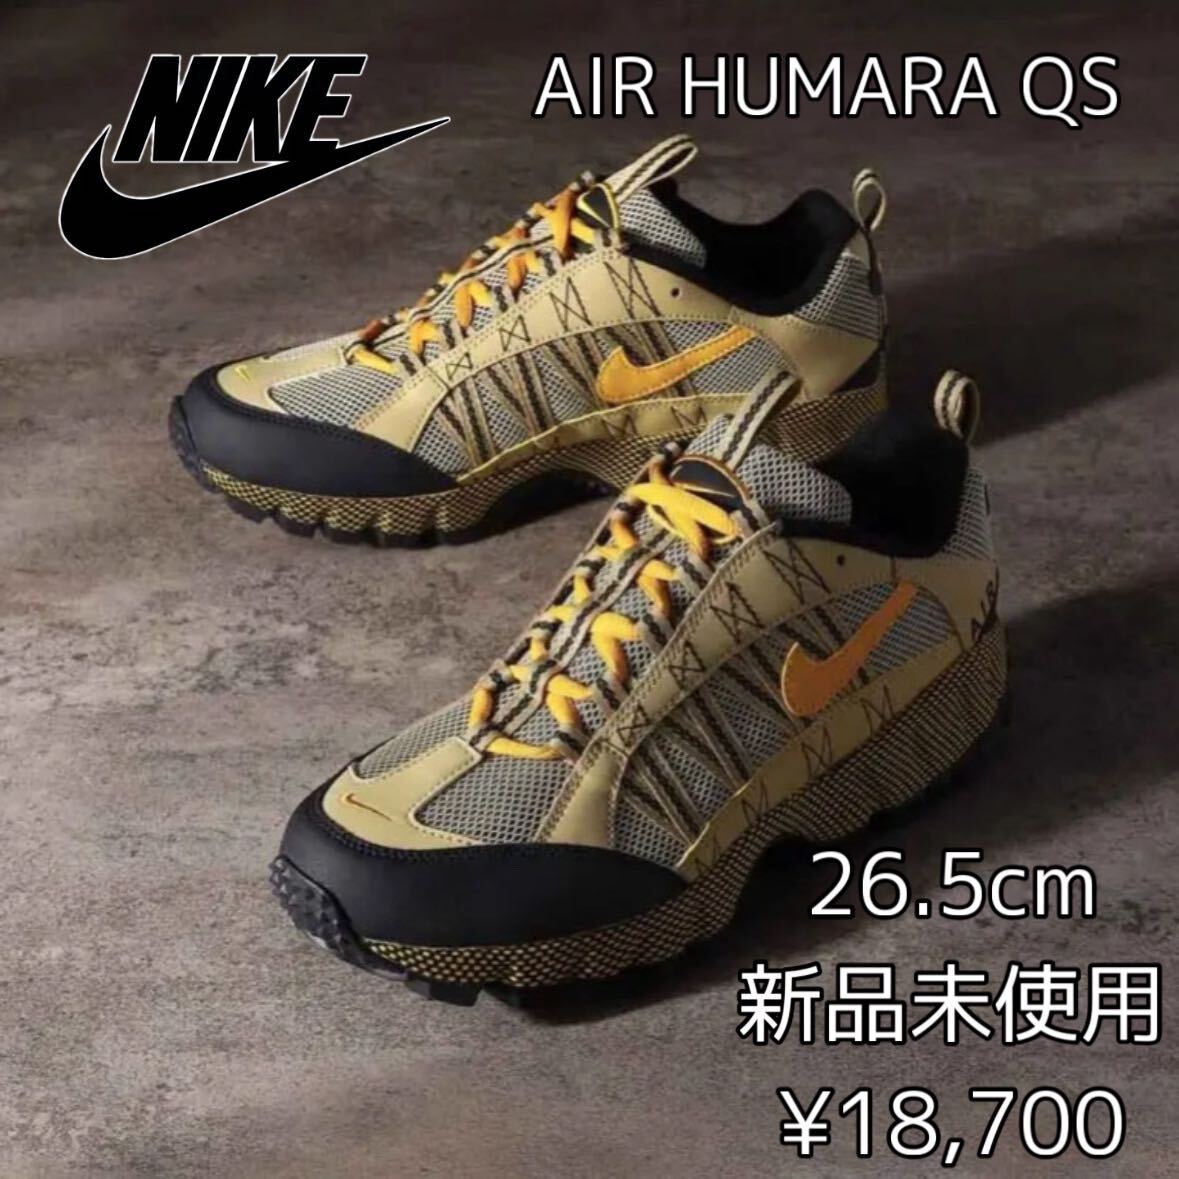 18,700 jpy! 26.5cm new goods NIKE AIR HUMARA QS air fmala air fmala sneakers outdoor shoes high King trail running reissue 